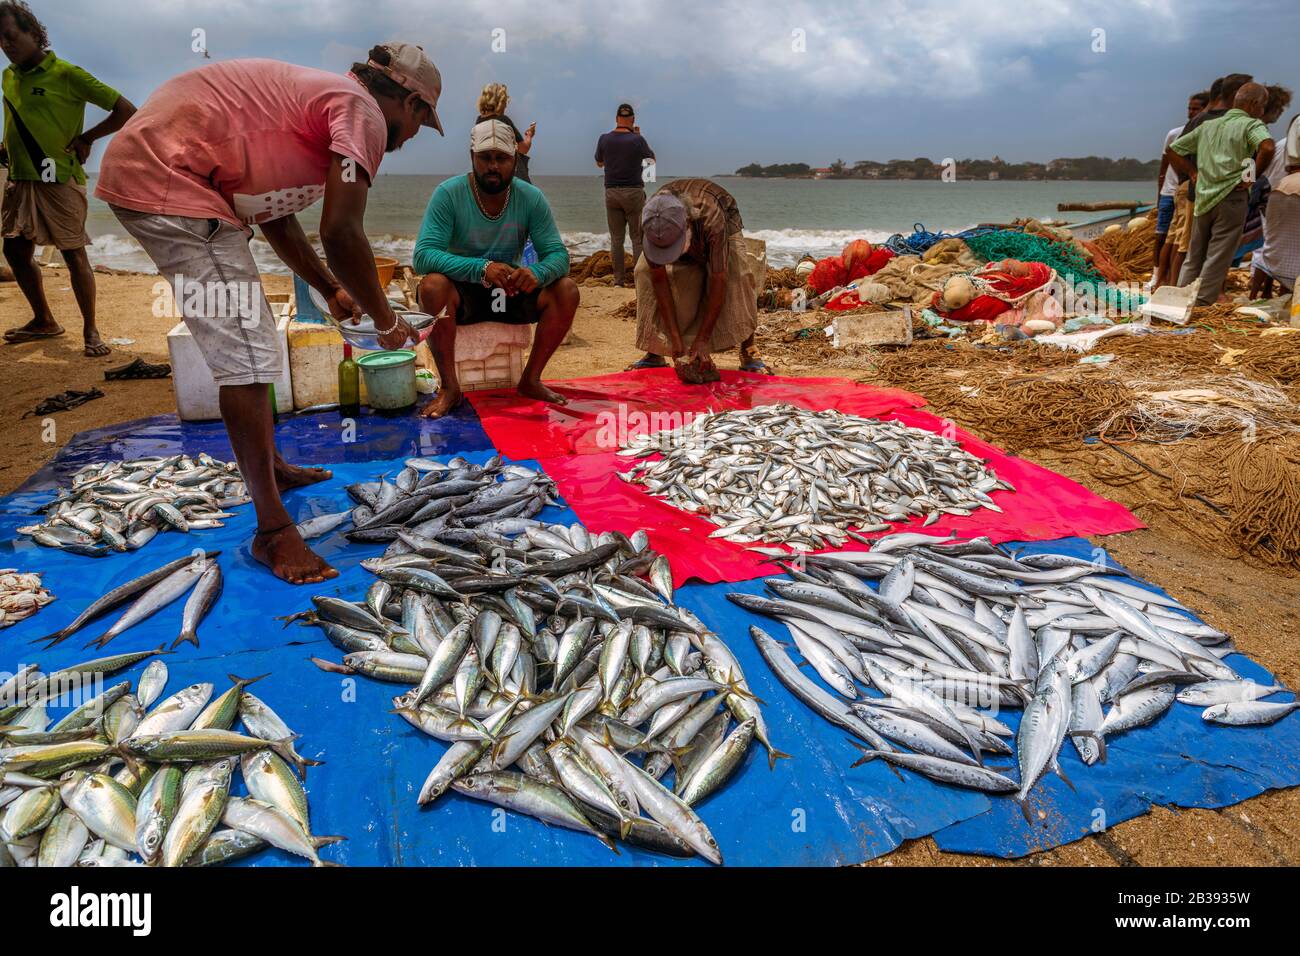 Un vendeur de poisson arrose de l'eau sur les captures pour l'empêcher de sécher à la chaleur au marché de poissons de Galle près de la ville de Galle au Sri Lanka. Banque D'Images